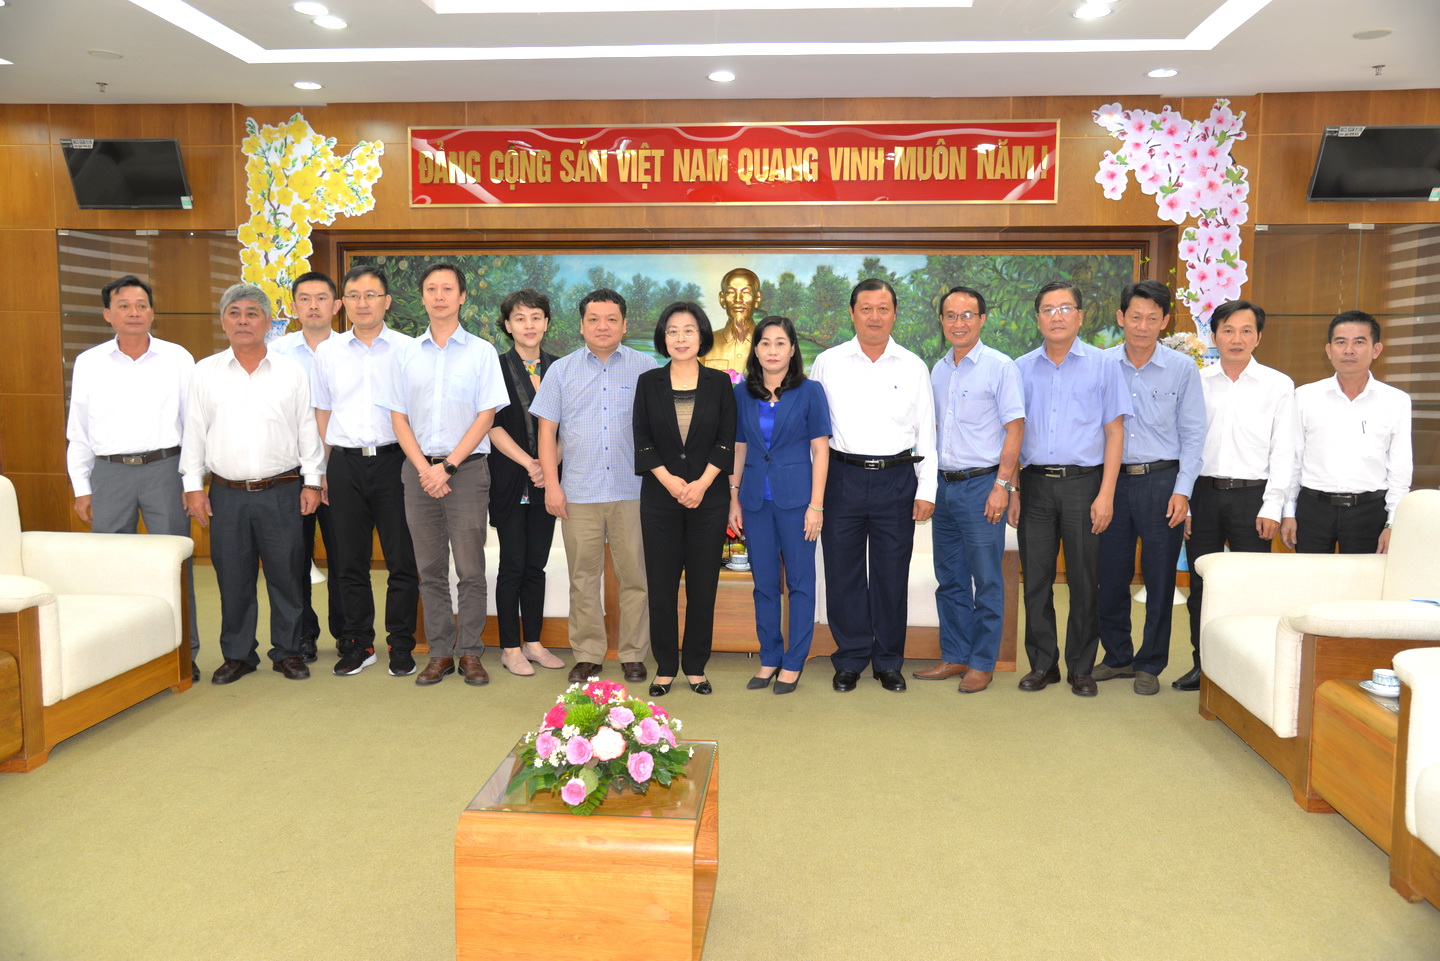 Đoàn đại biểu Nhân dân nhật báo chụp ảnh lưu niệm với lãnh đạo tỉnh Tiền Giang